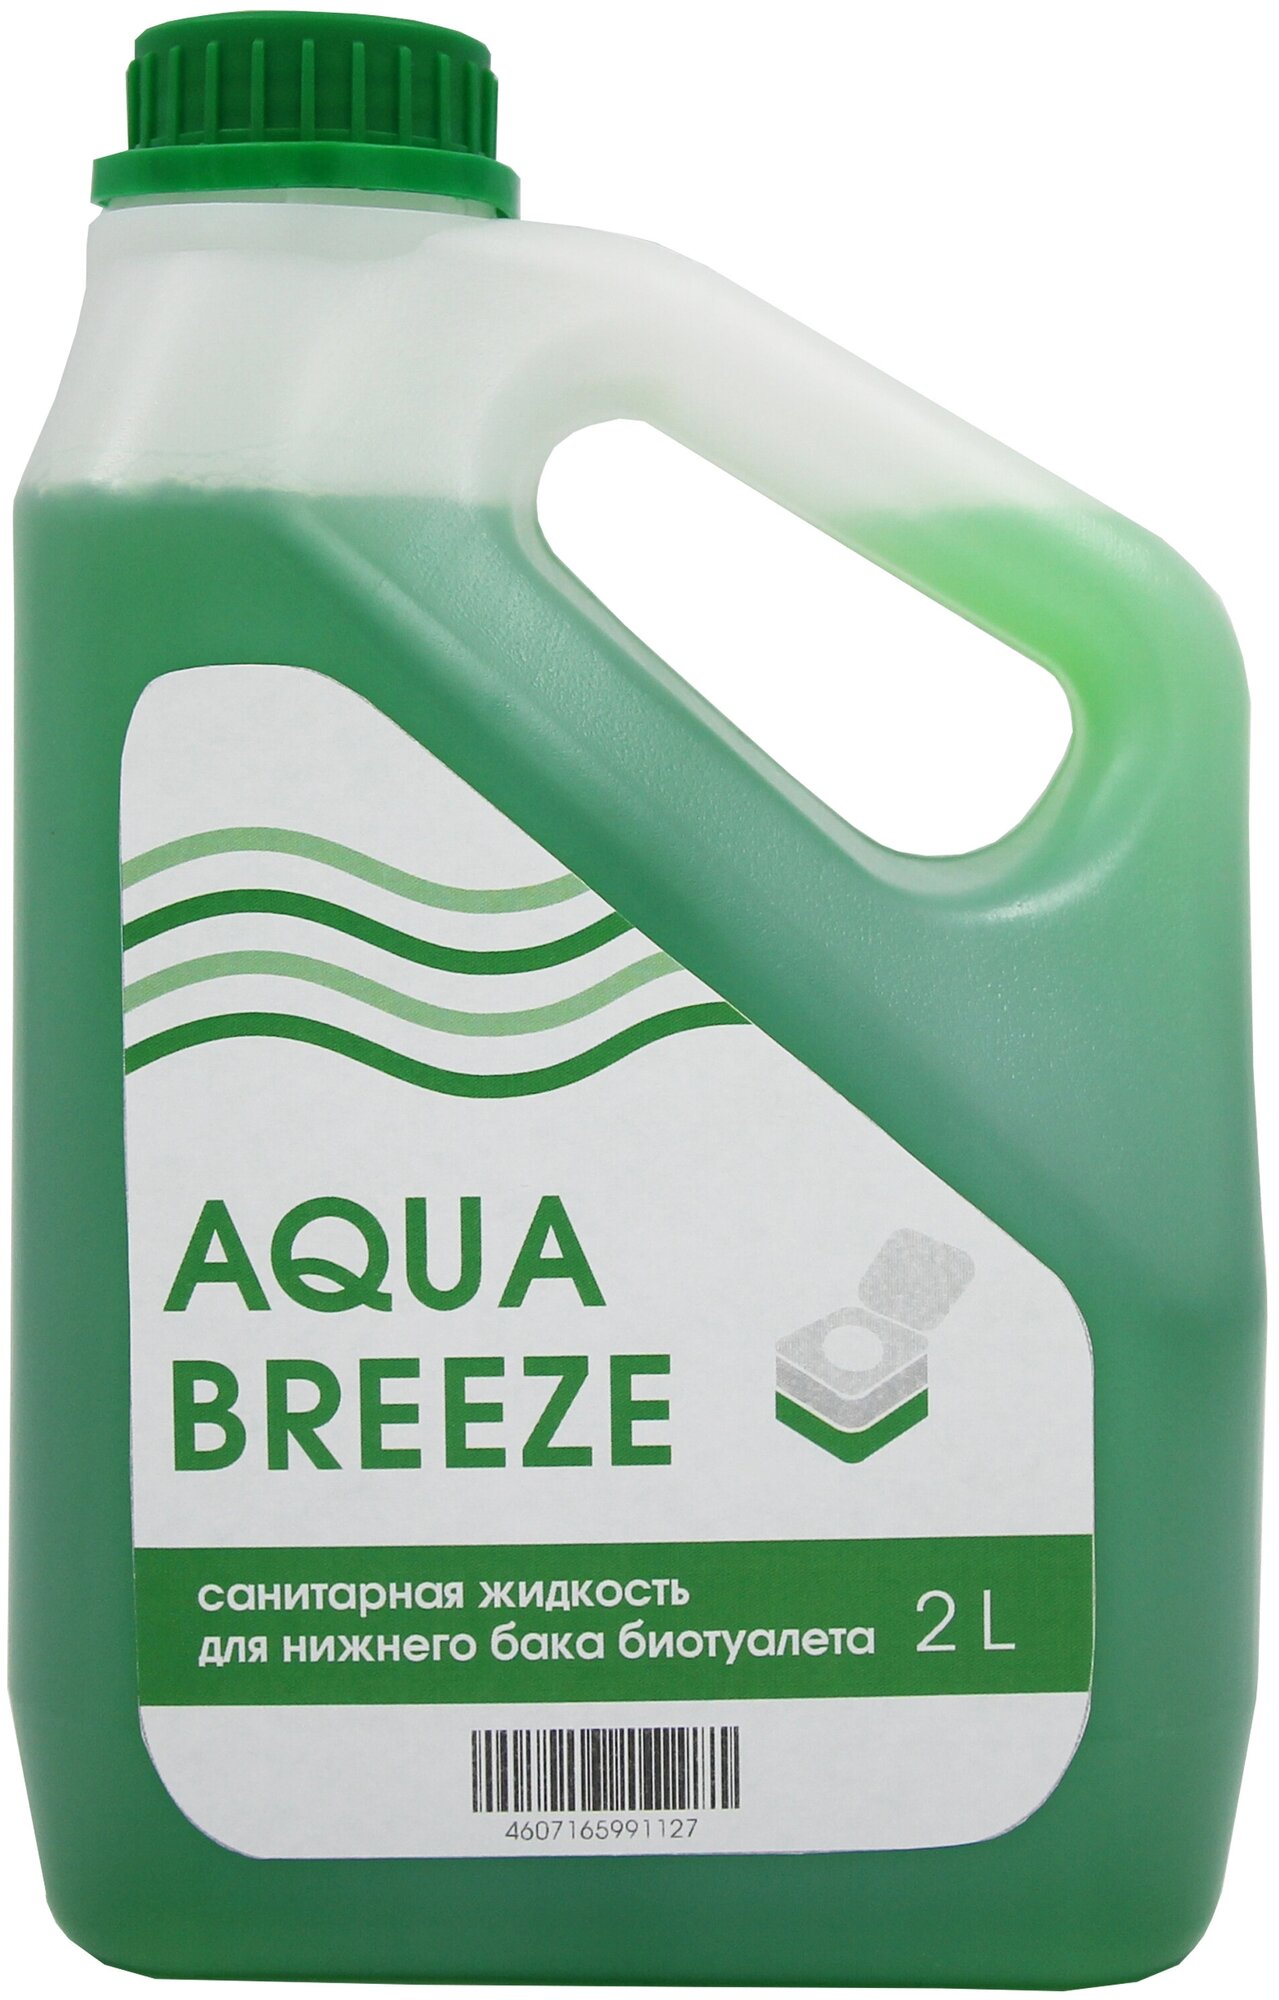 Санитарная жидкость Aquabreeze для нижнего бака 2 л